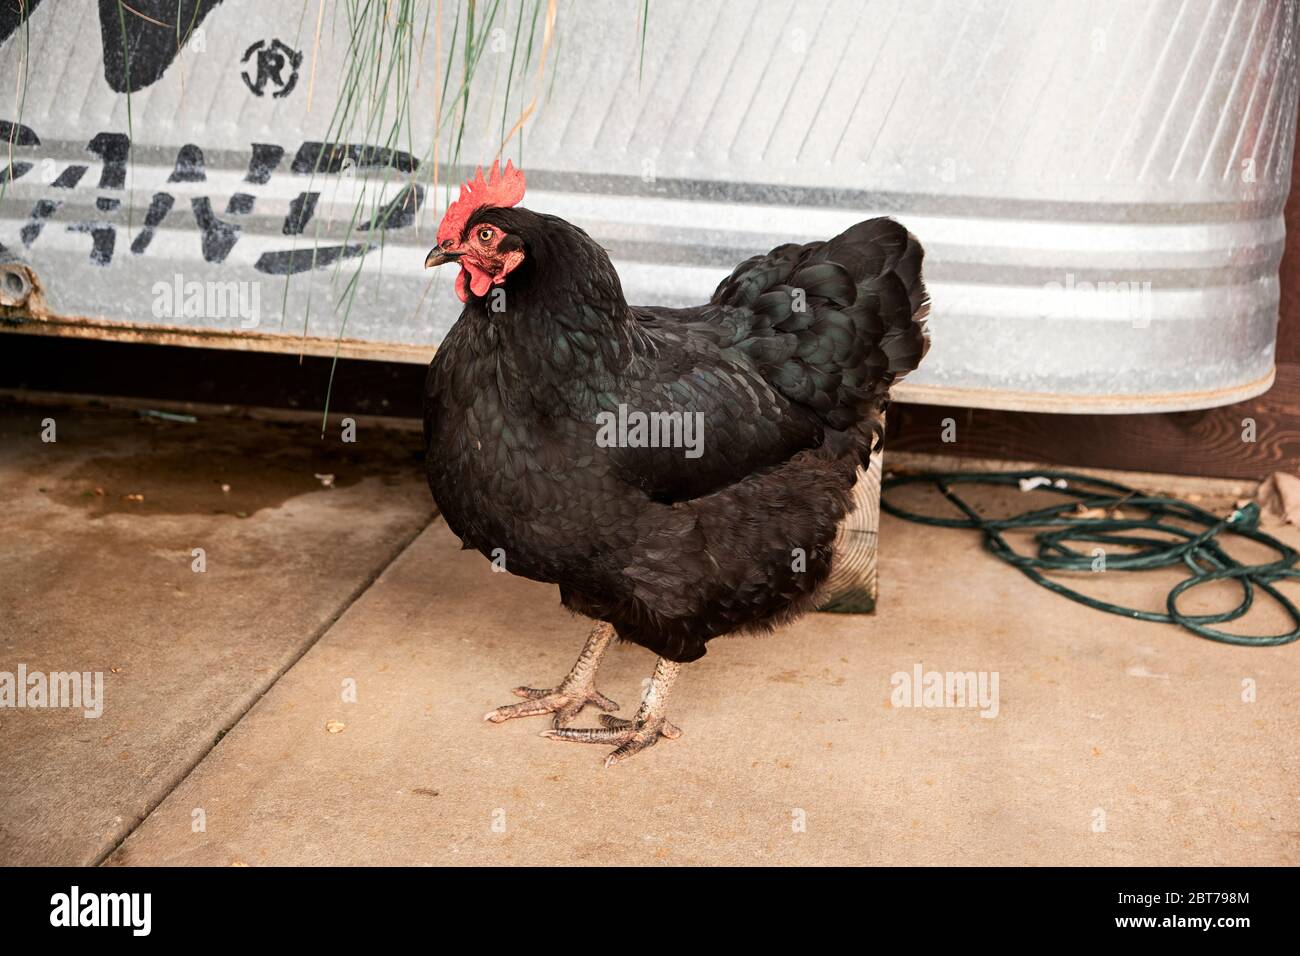 Schwarzer Australorp Hahn oder männliches Huhn mit einem roten Kamm. Stockfoto